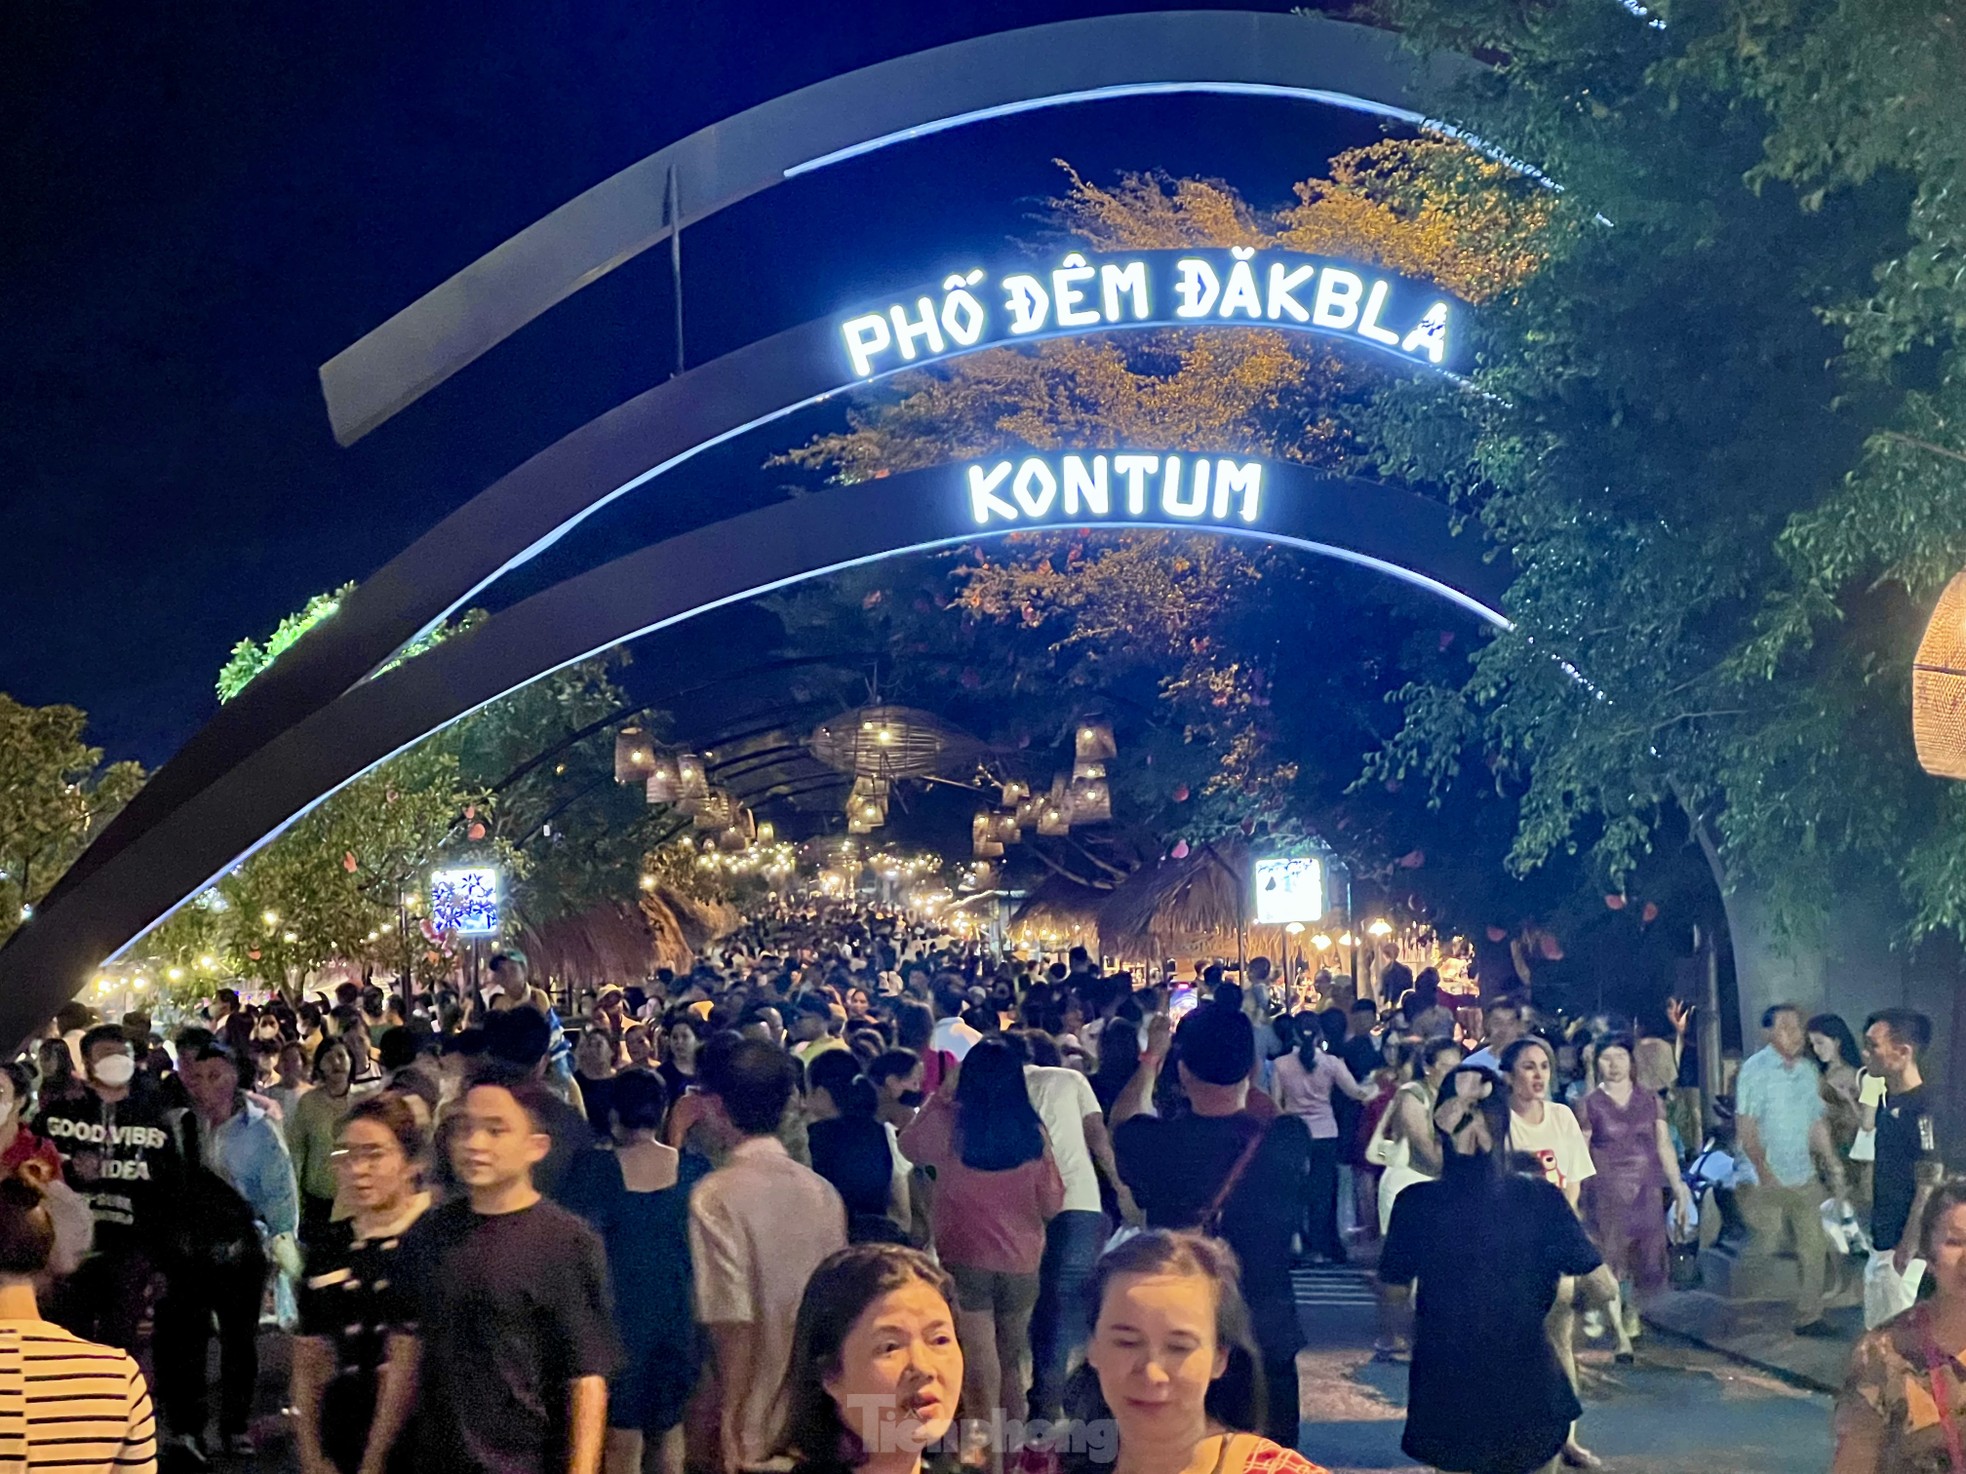 Hàng nghìn người đổ về phố ẩm thực Đăk Bla ăn đêm ảnh 1